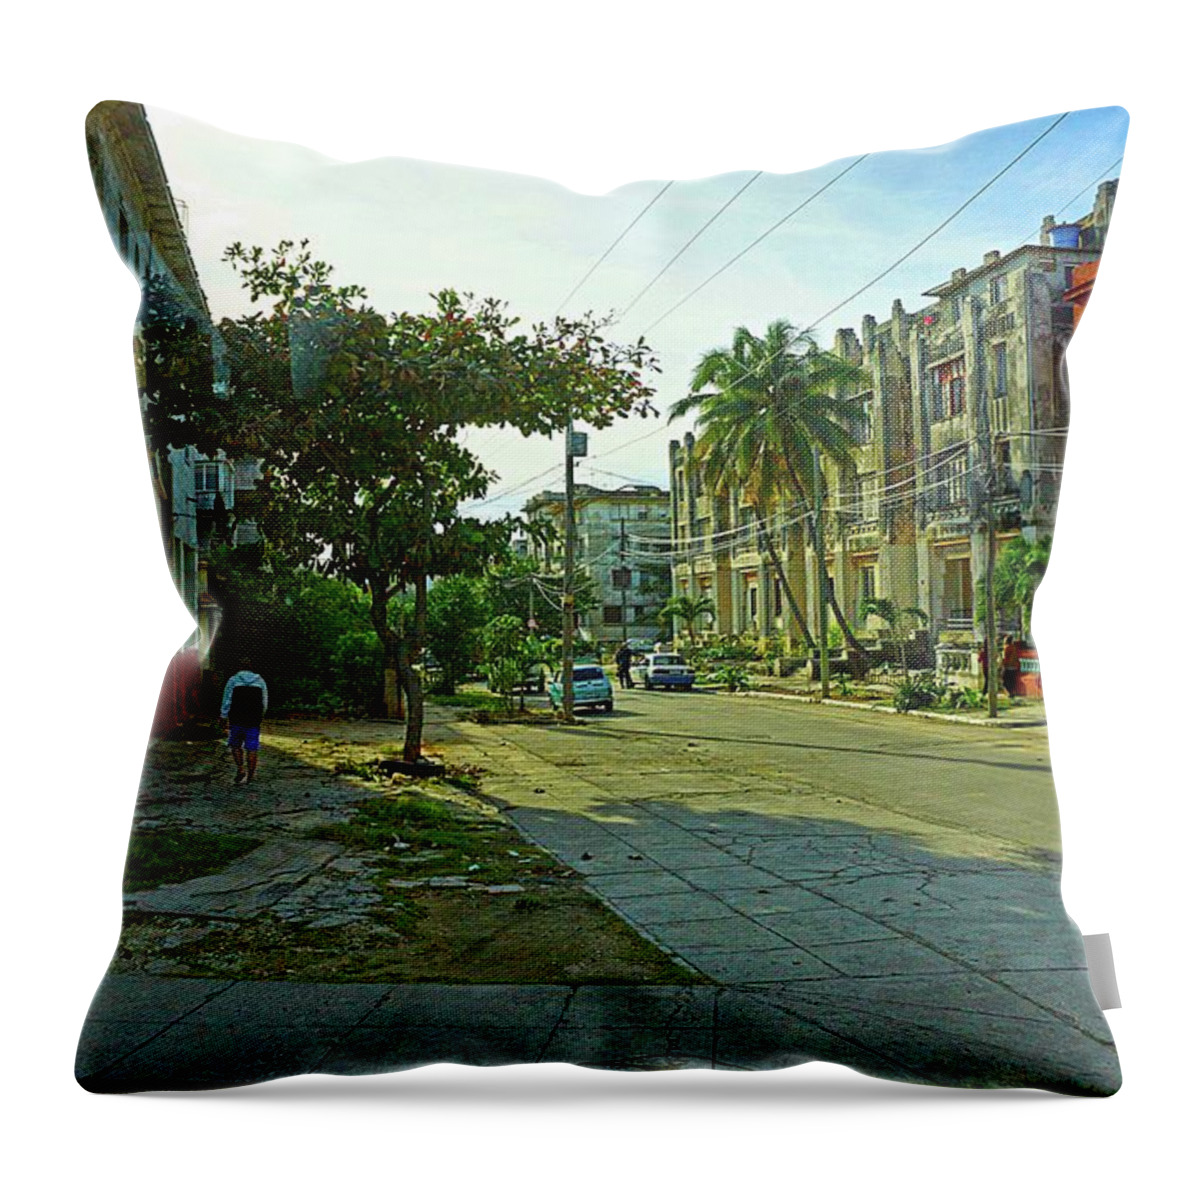 Havana Throw Pillow featuring the photograph Havana-23 by Rezzan Erguvan-Onal